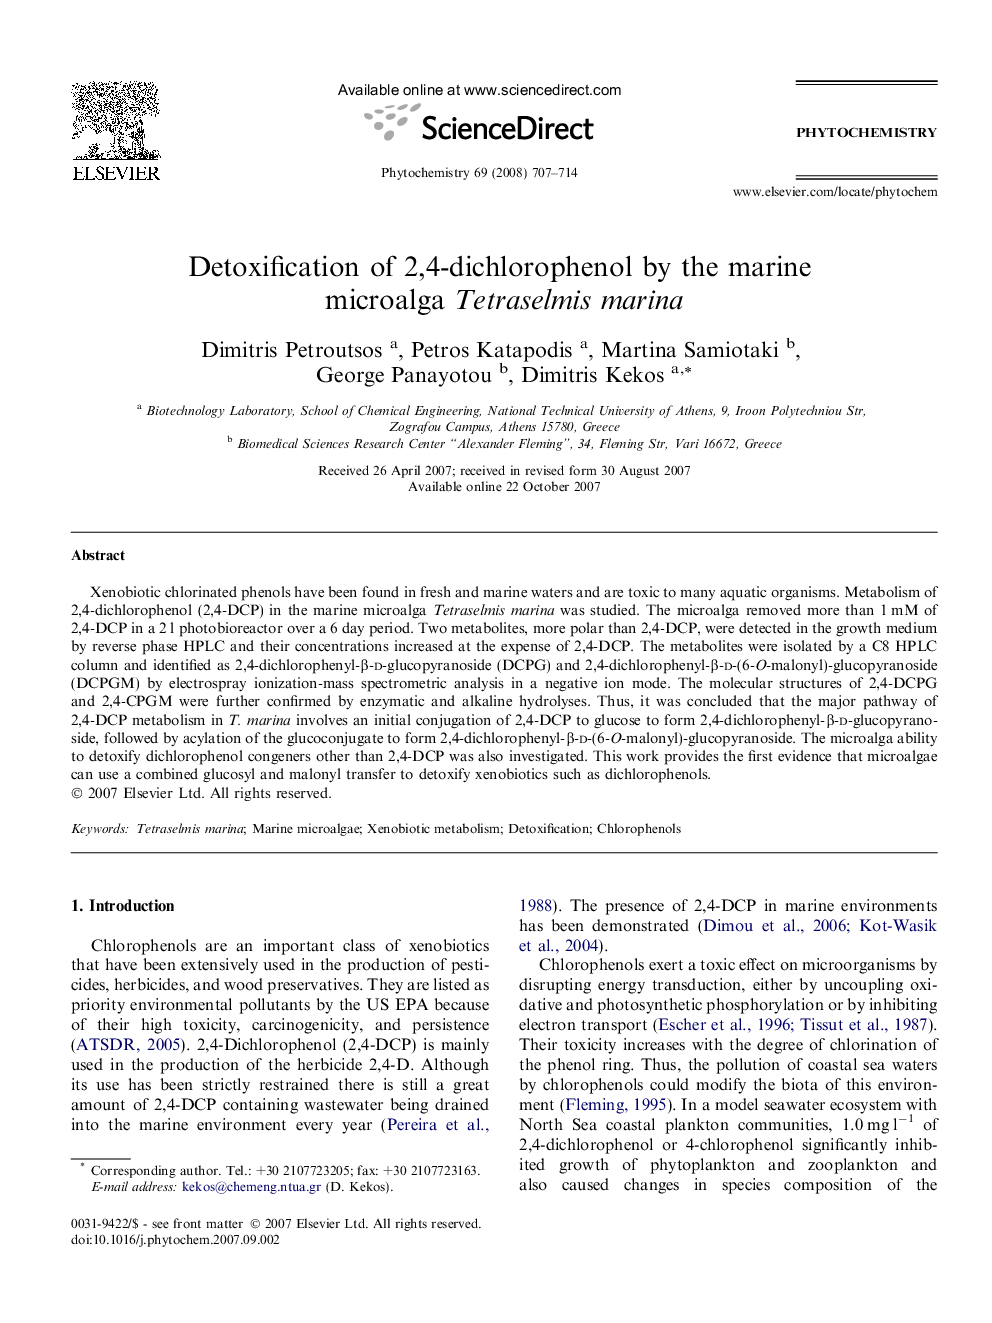 Detoxification of 2,4-dichlorophenol by the marine microalga Tetraselmis marina